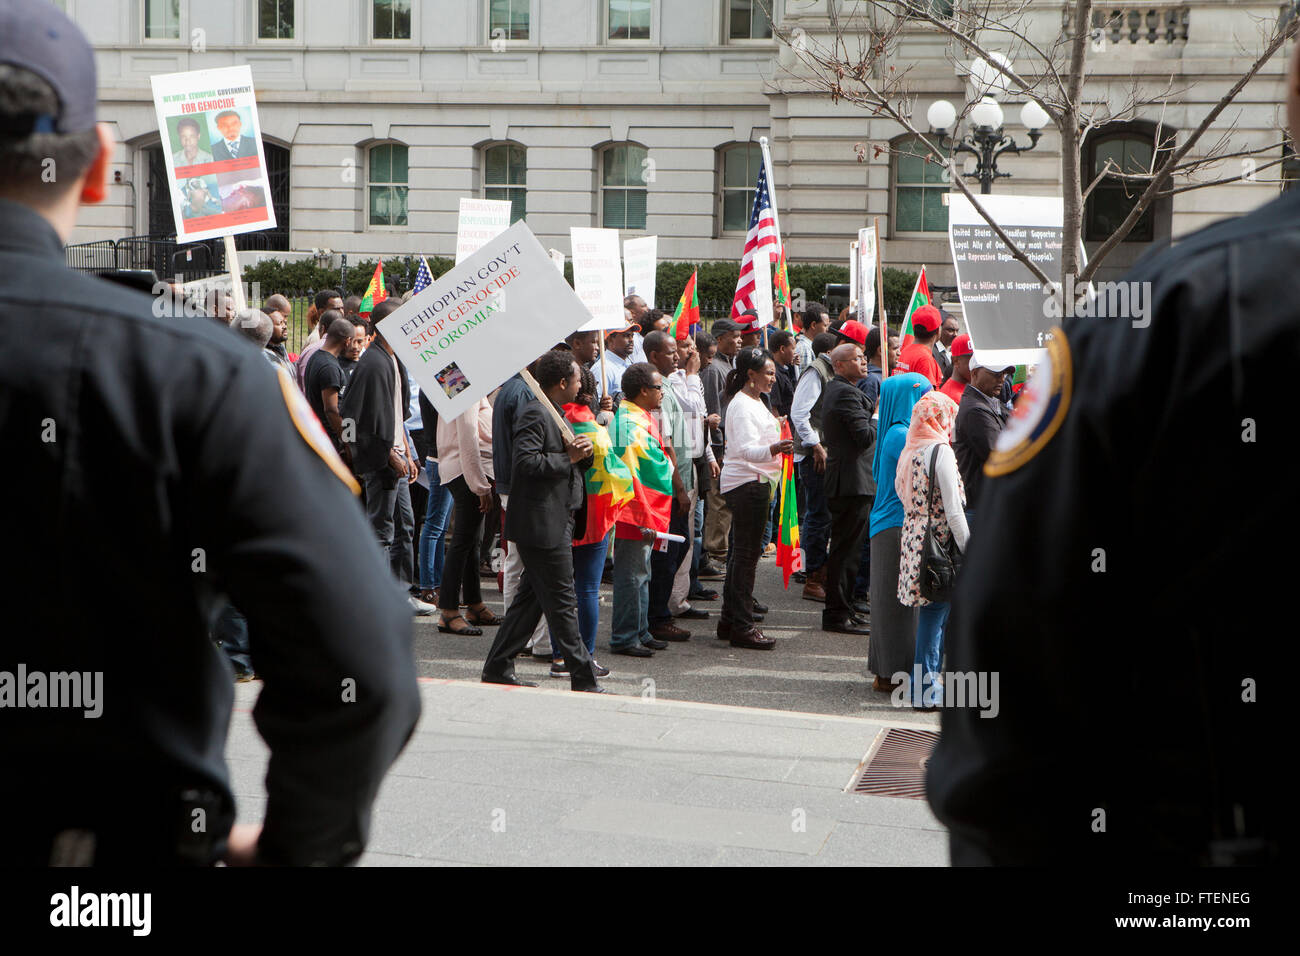 Freitag, 11. März 2016, Washington, DC USA: Protest gegen die äthiopische Regierung Völkermord und Krieg in Oromia, Äthiopien Stockfoto